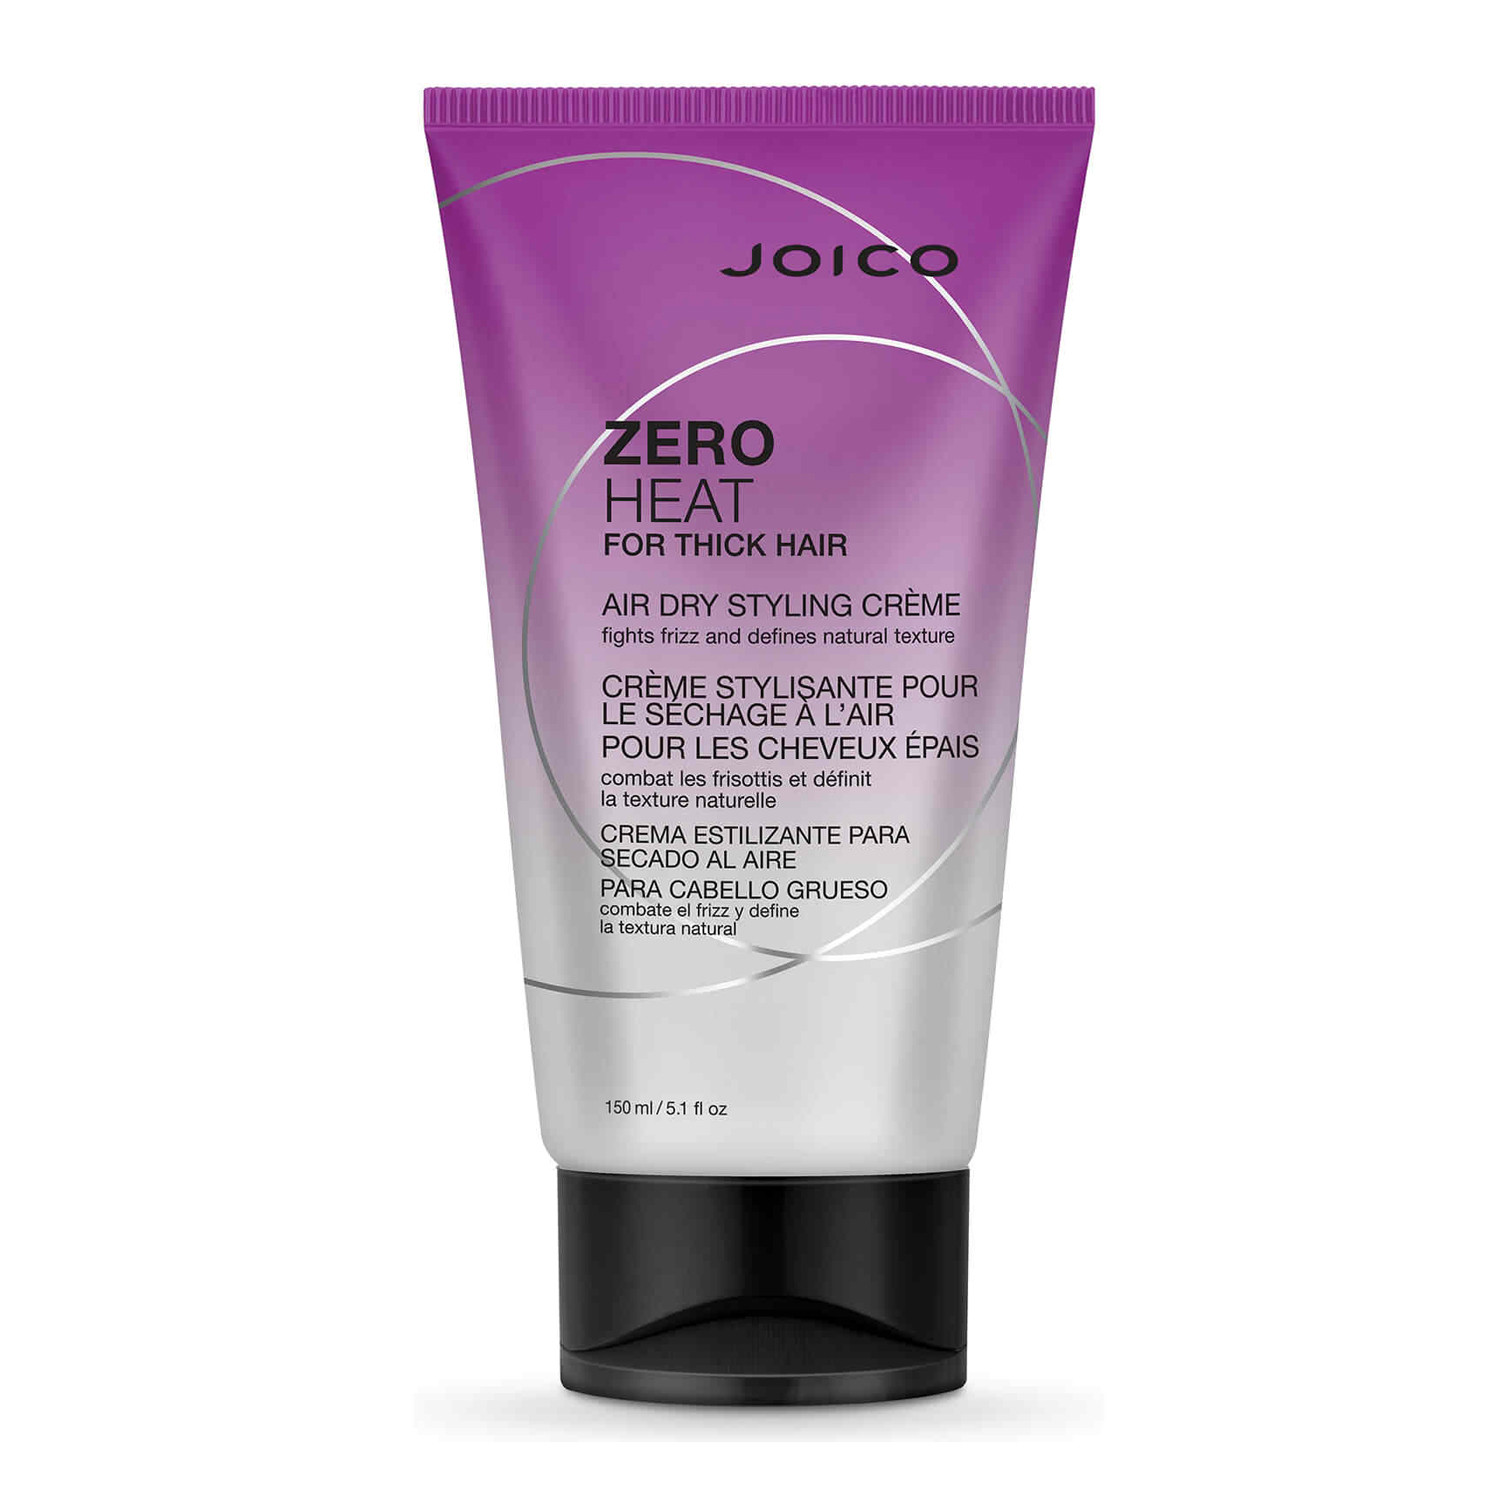 Joico Zero Heat For Thick Hair Стилізуючий крем для густого волосся (без сушіння)